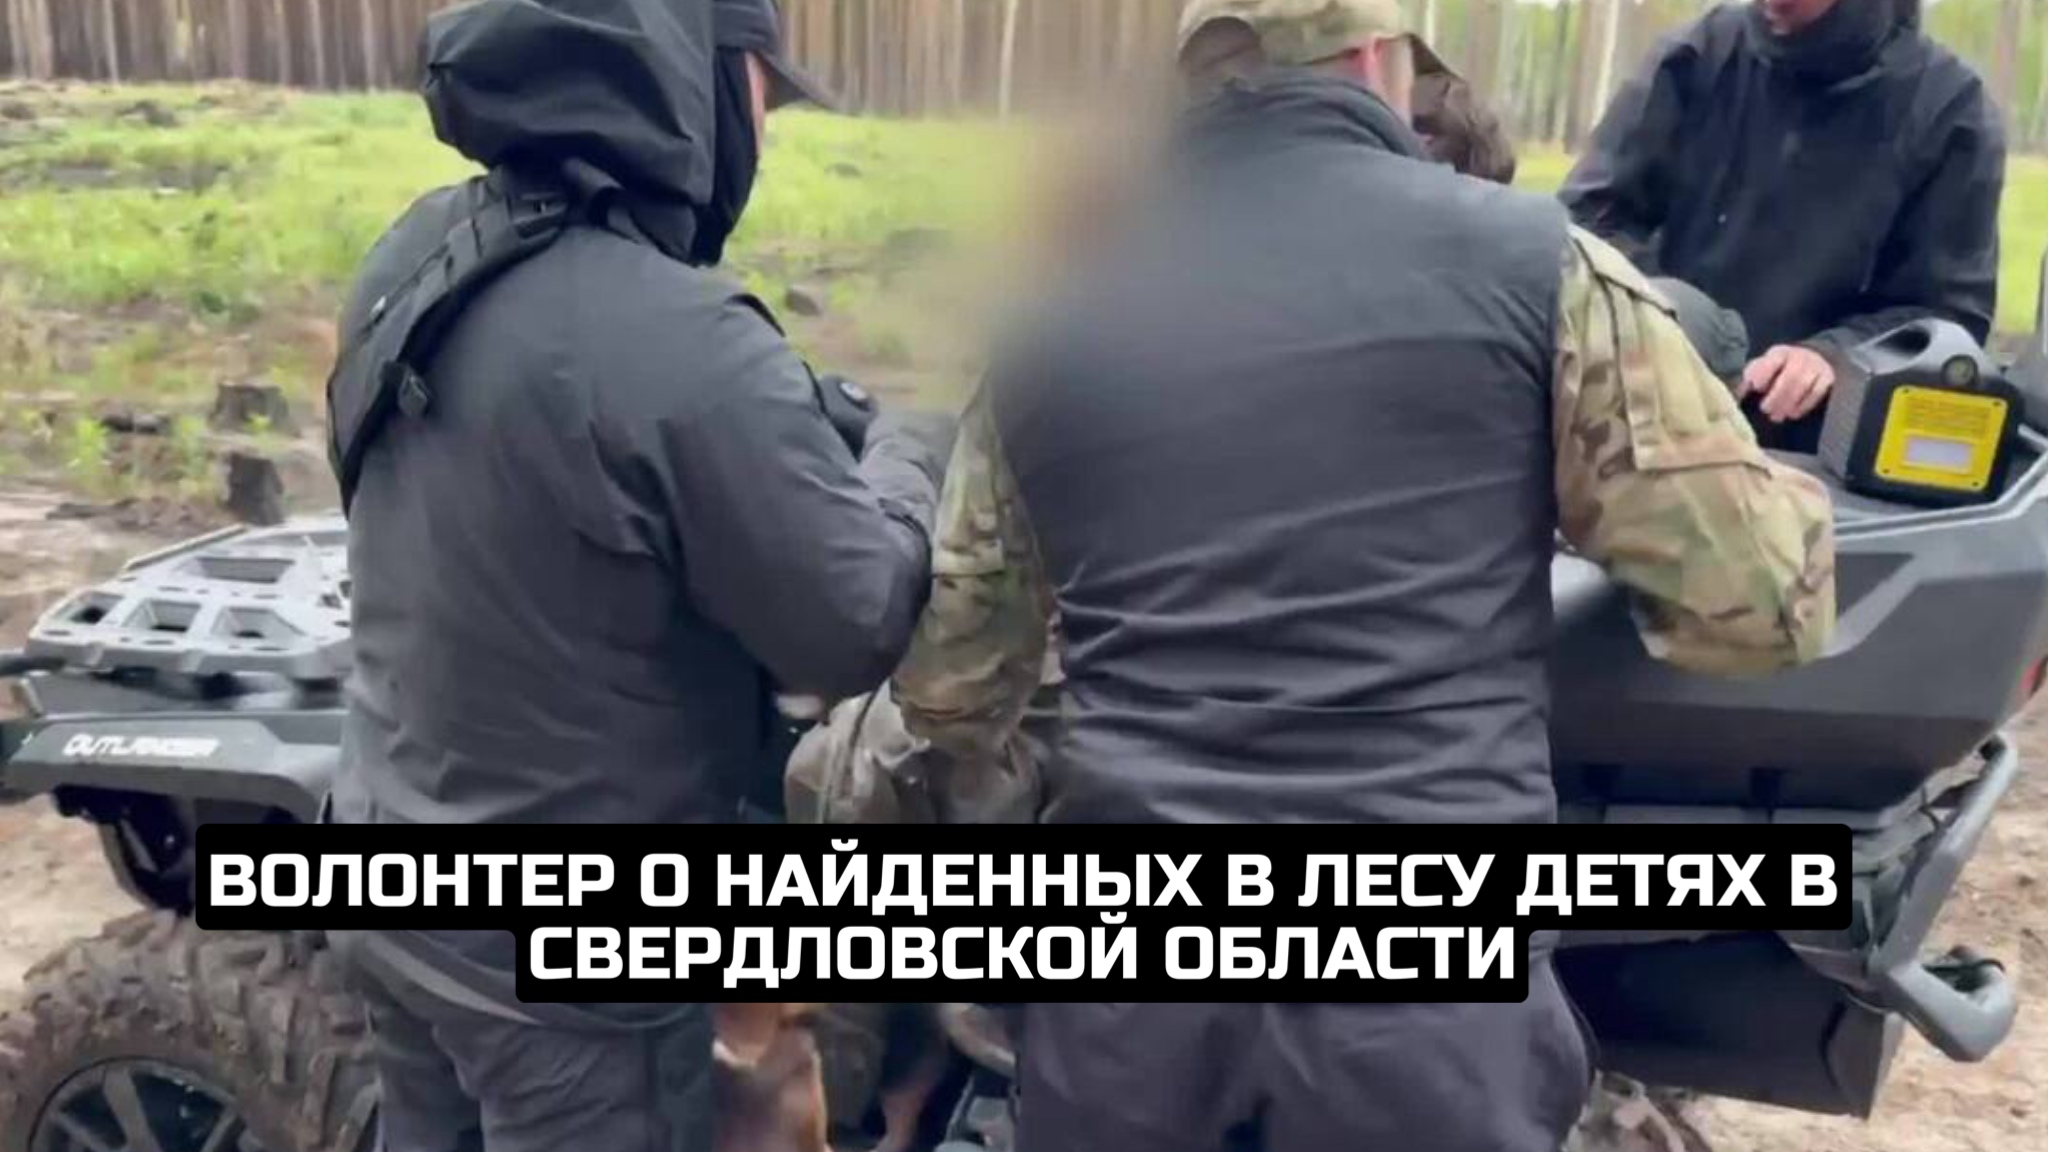 Волонтер о найденных в лесу детях в Свердловской области